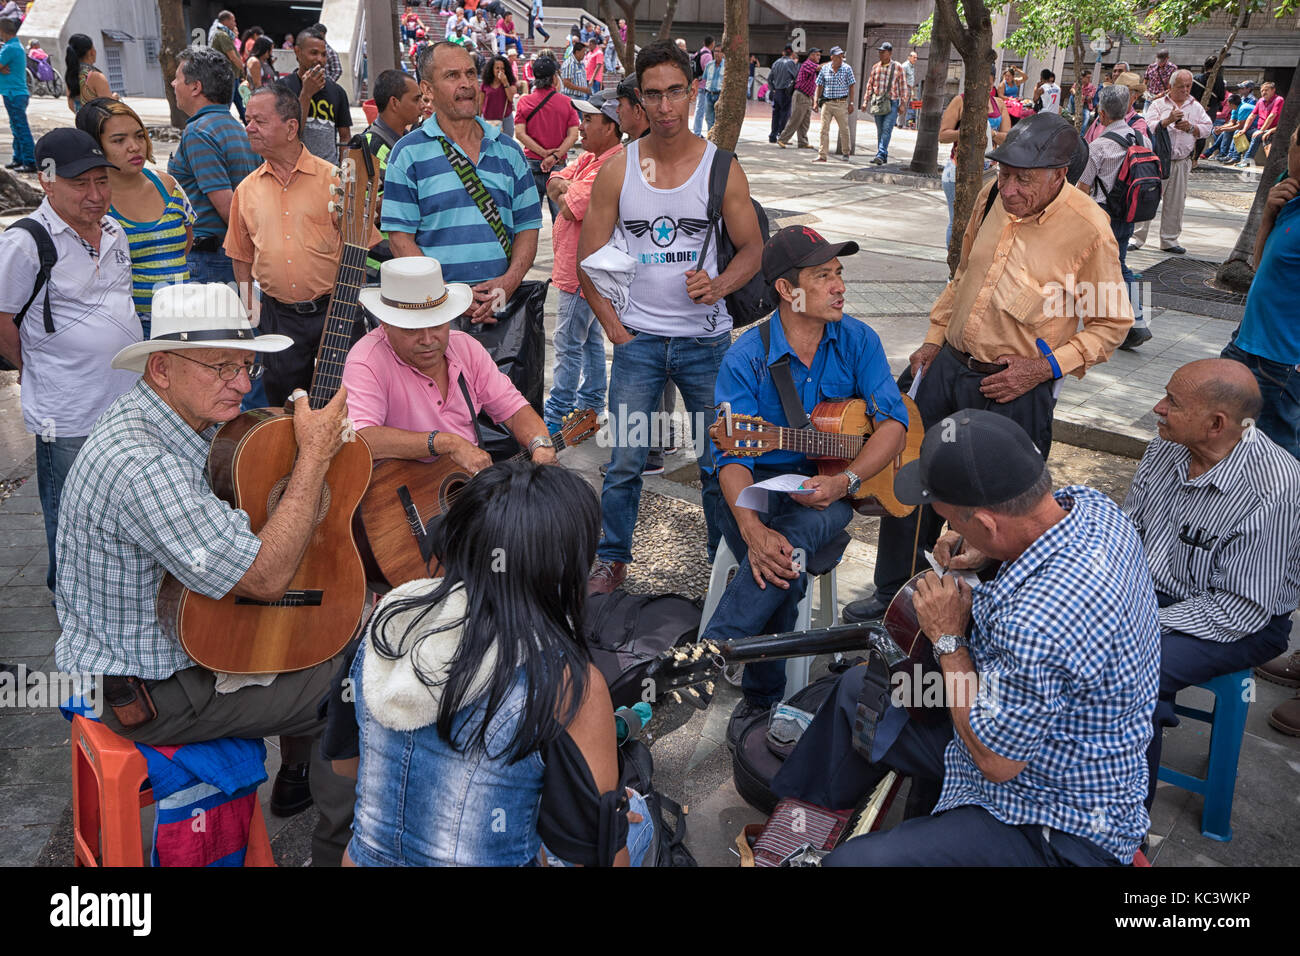 26 septembre 2017 Medellin, Colombie : les hommes se préparent à jouer de la guitare dans 'Parque de berrio' dans le centre de la ville Banque D'Images